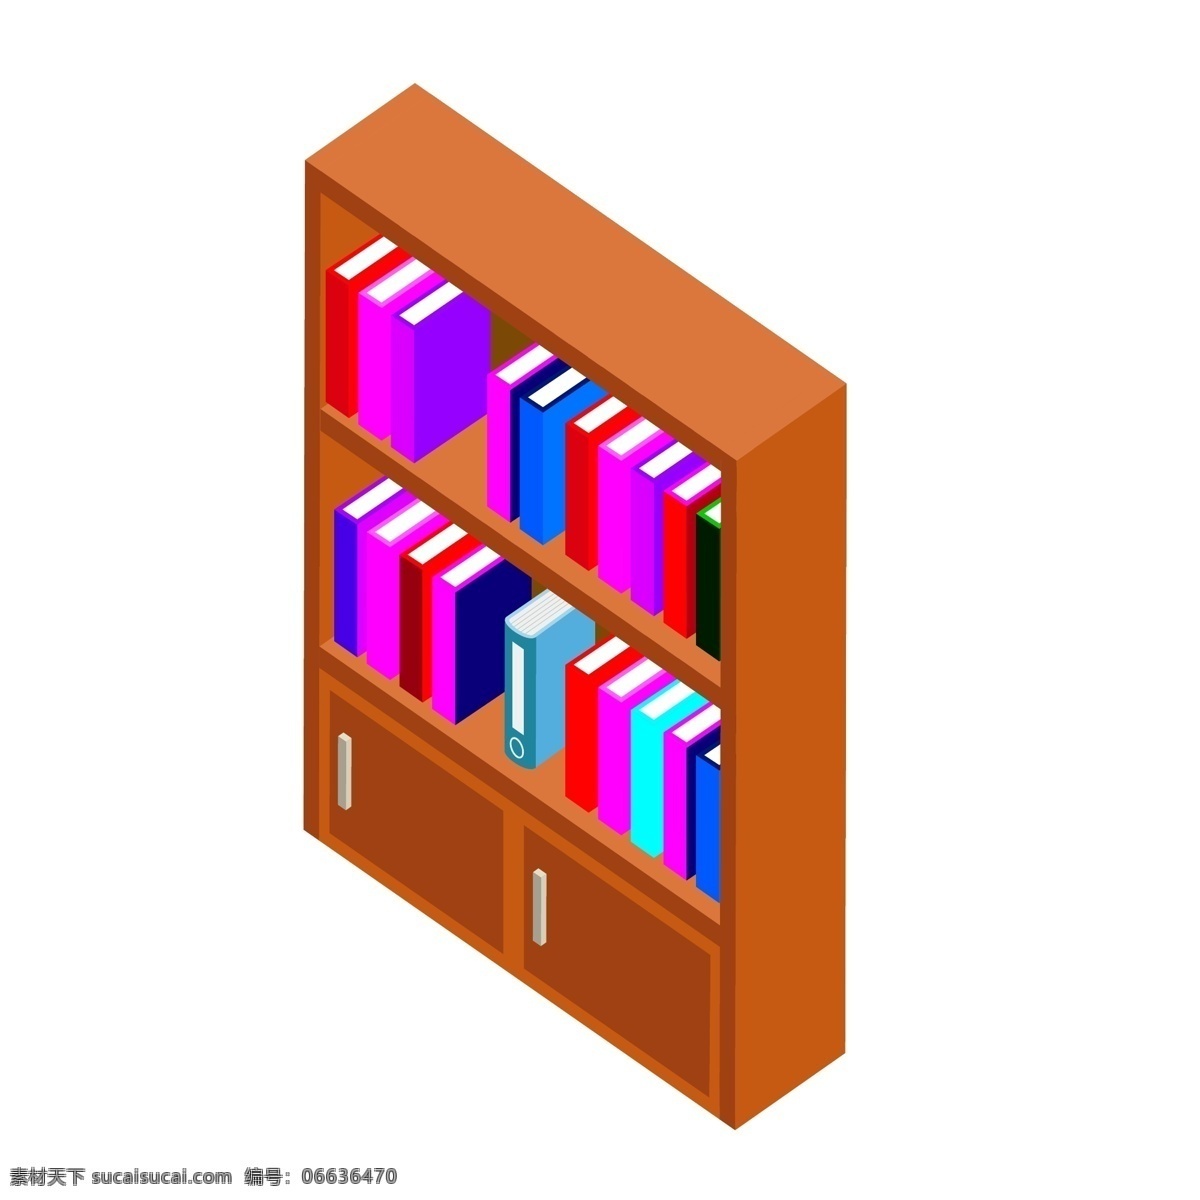 d 深棕色 书柜 书架 家具 元素 柜子 衣柜 木质 书桌 书